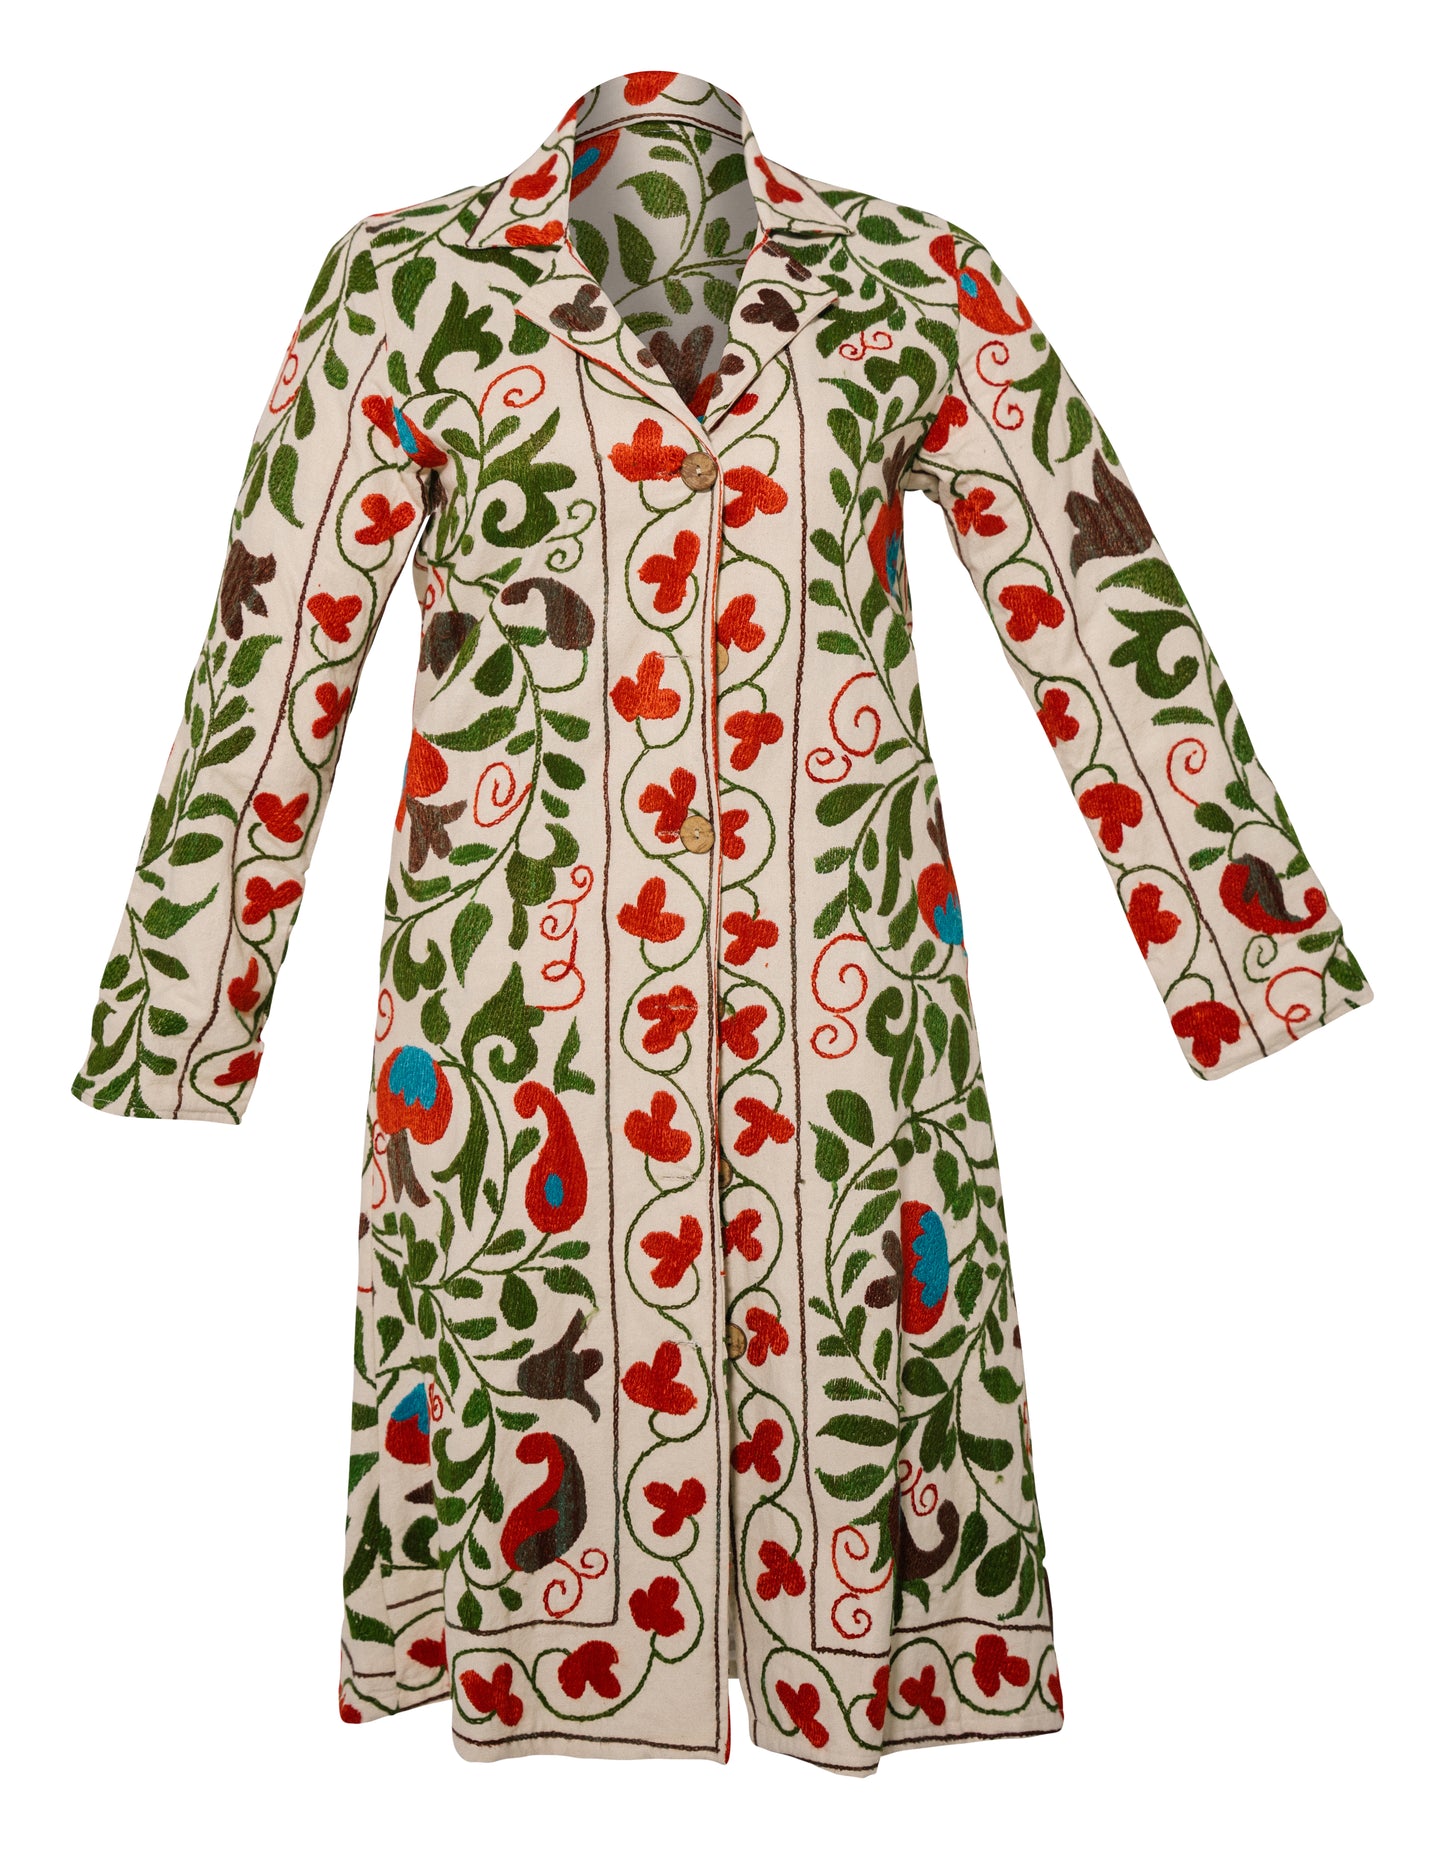 GUL COAT - Suzani Embroidered From Uzbekistan - GREEN ON WHITE - LARGE